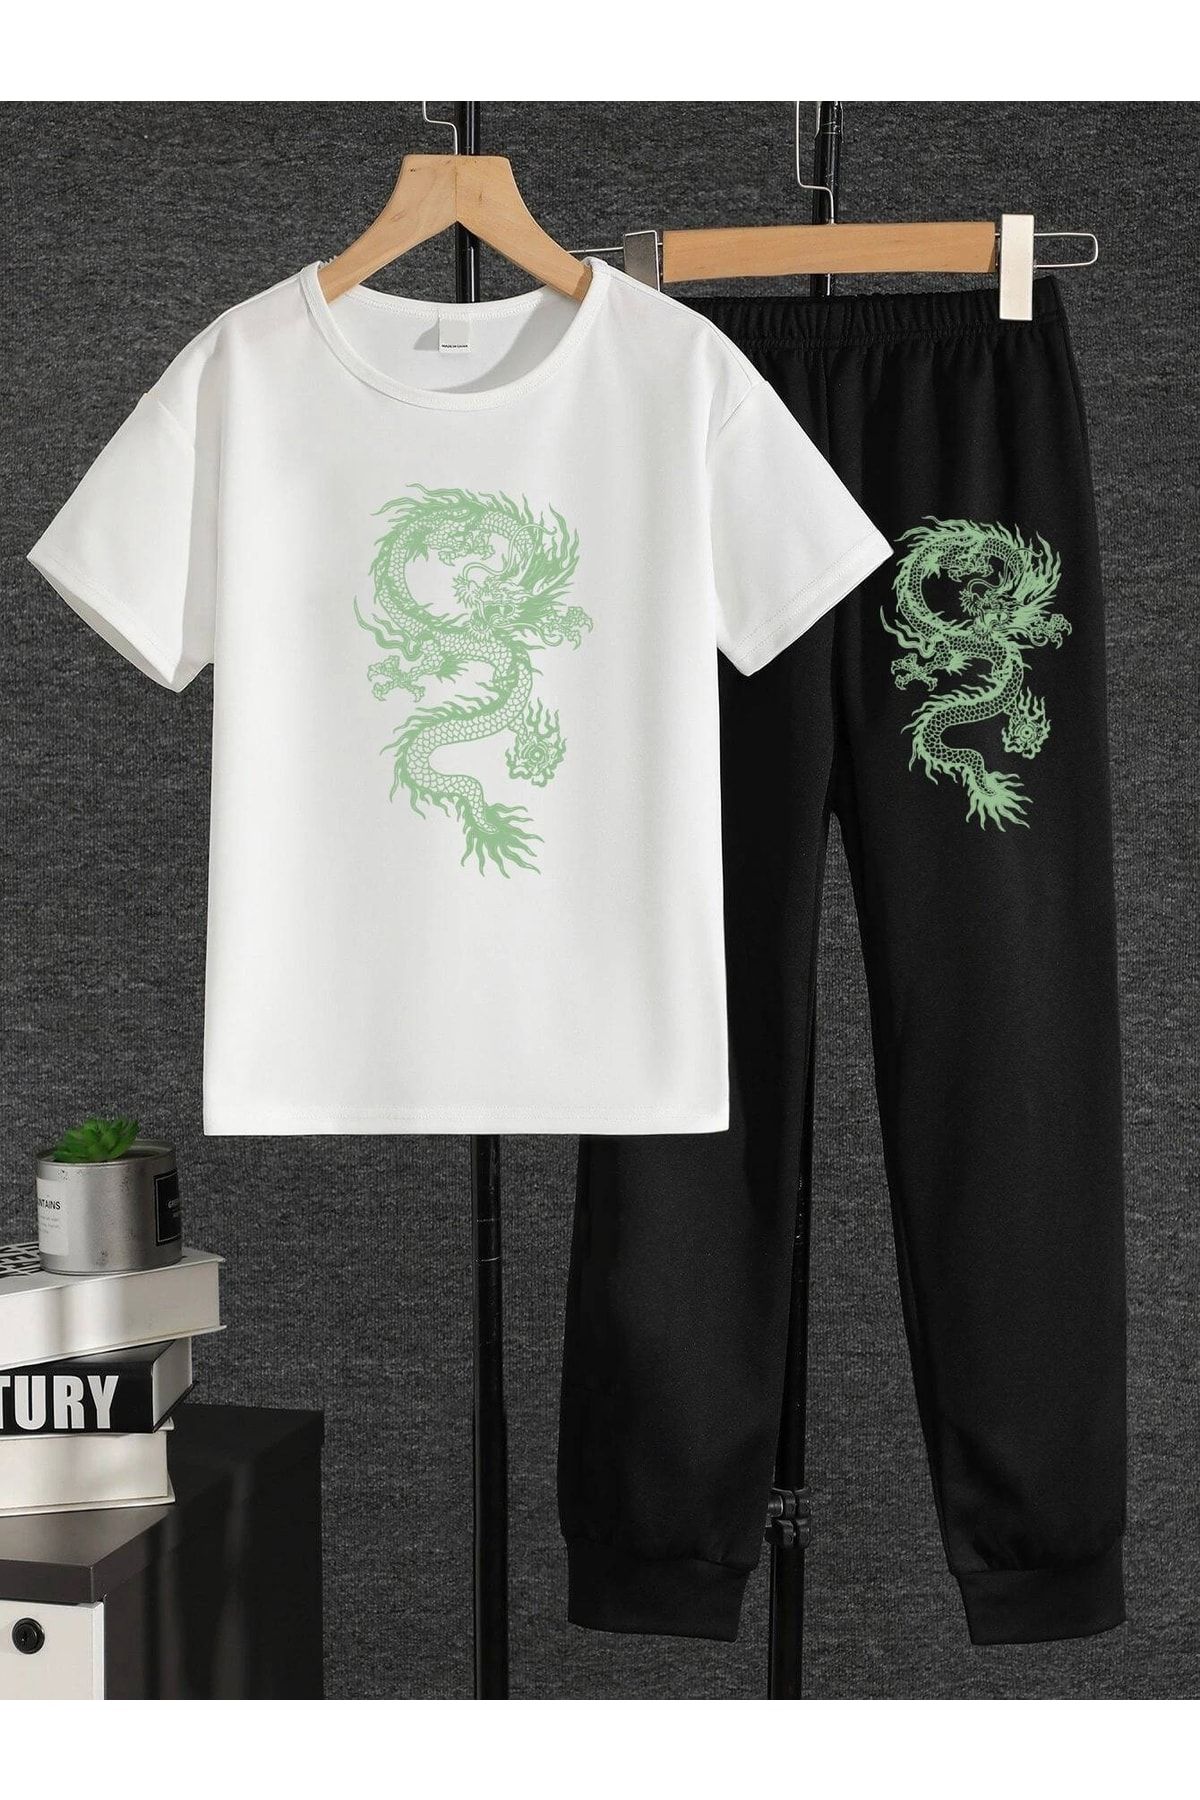 LePold Üst Beyaz Tişört Alt Siyah Dragon Baskılı Kız/erkek Oversize Tişört& Eşofman Takım